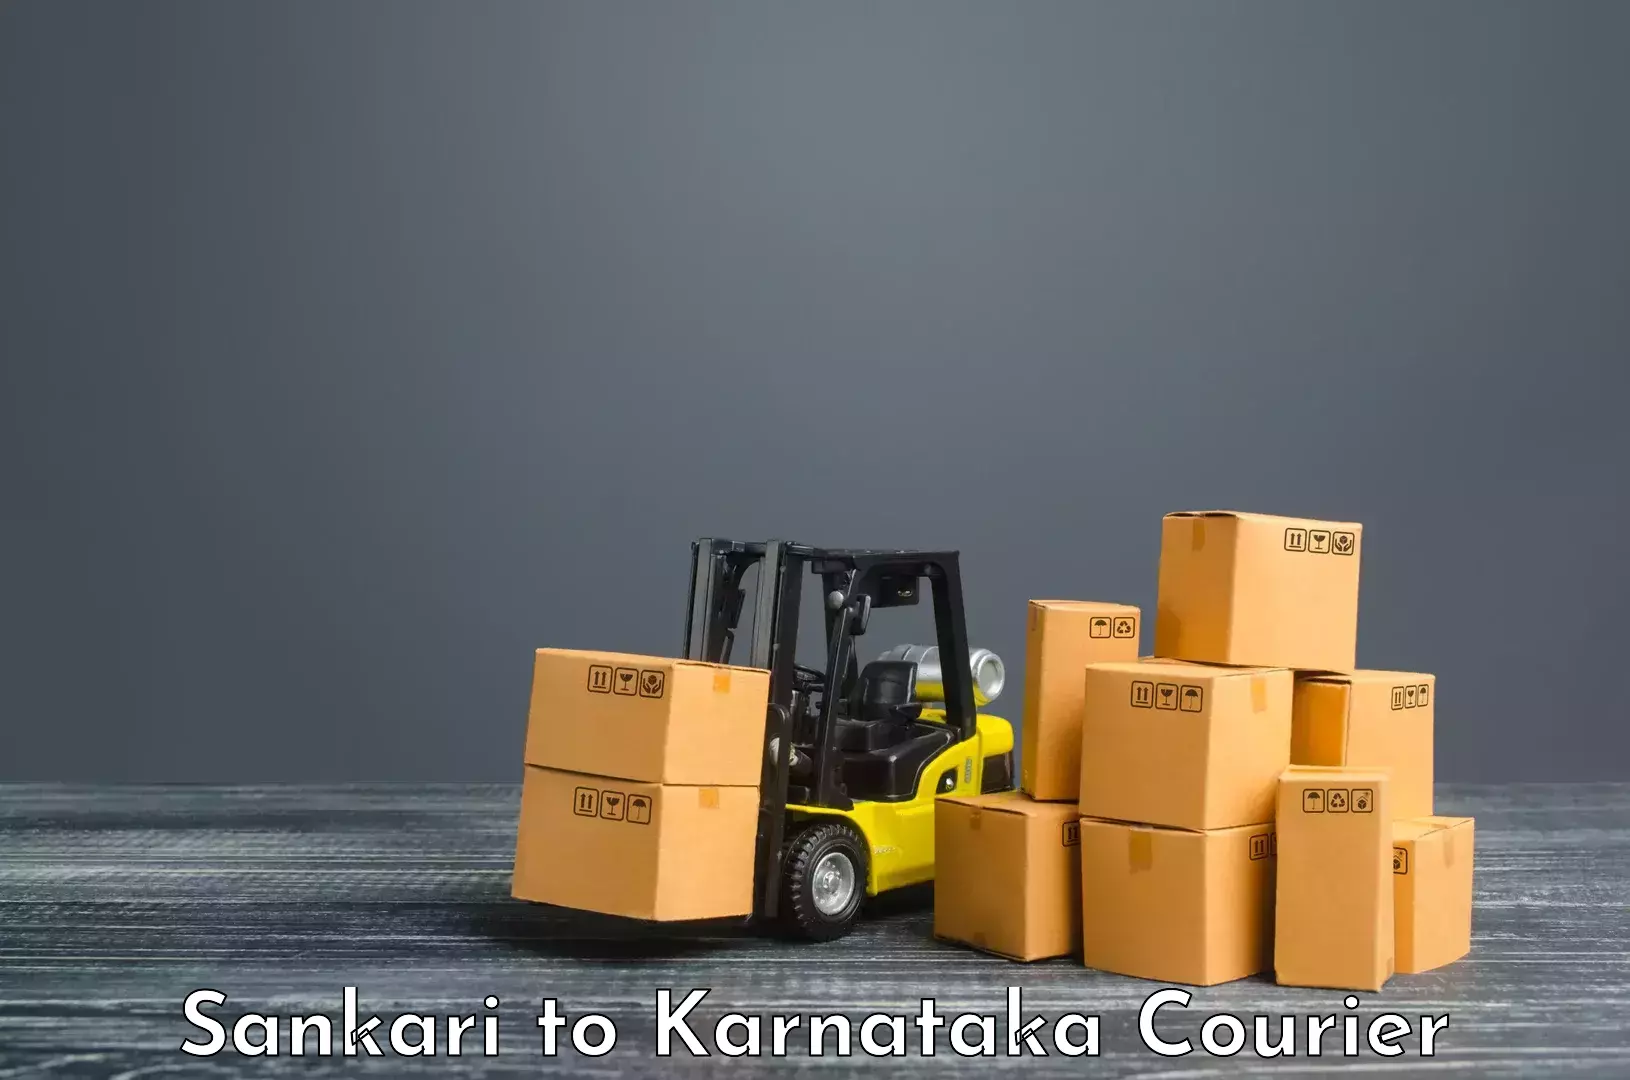 Holiday shipping services Sankari to Harohalli